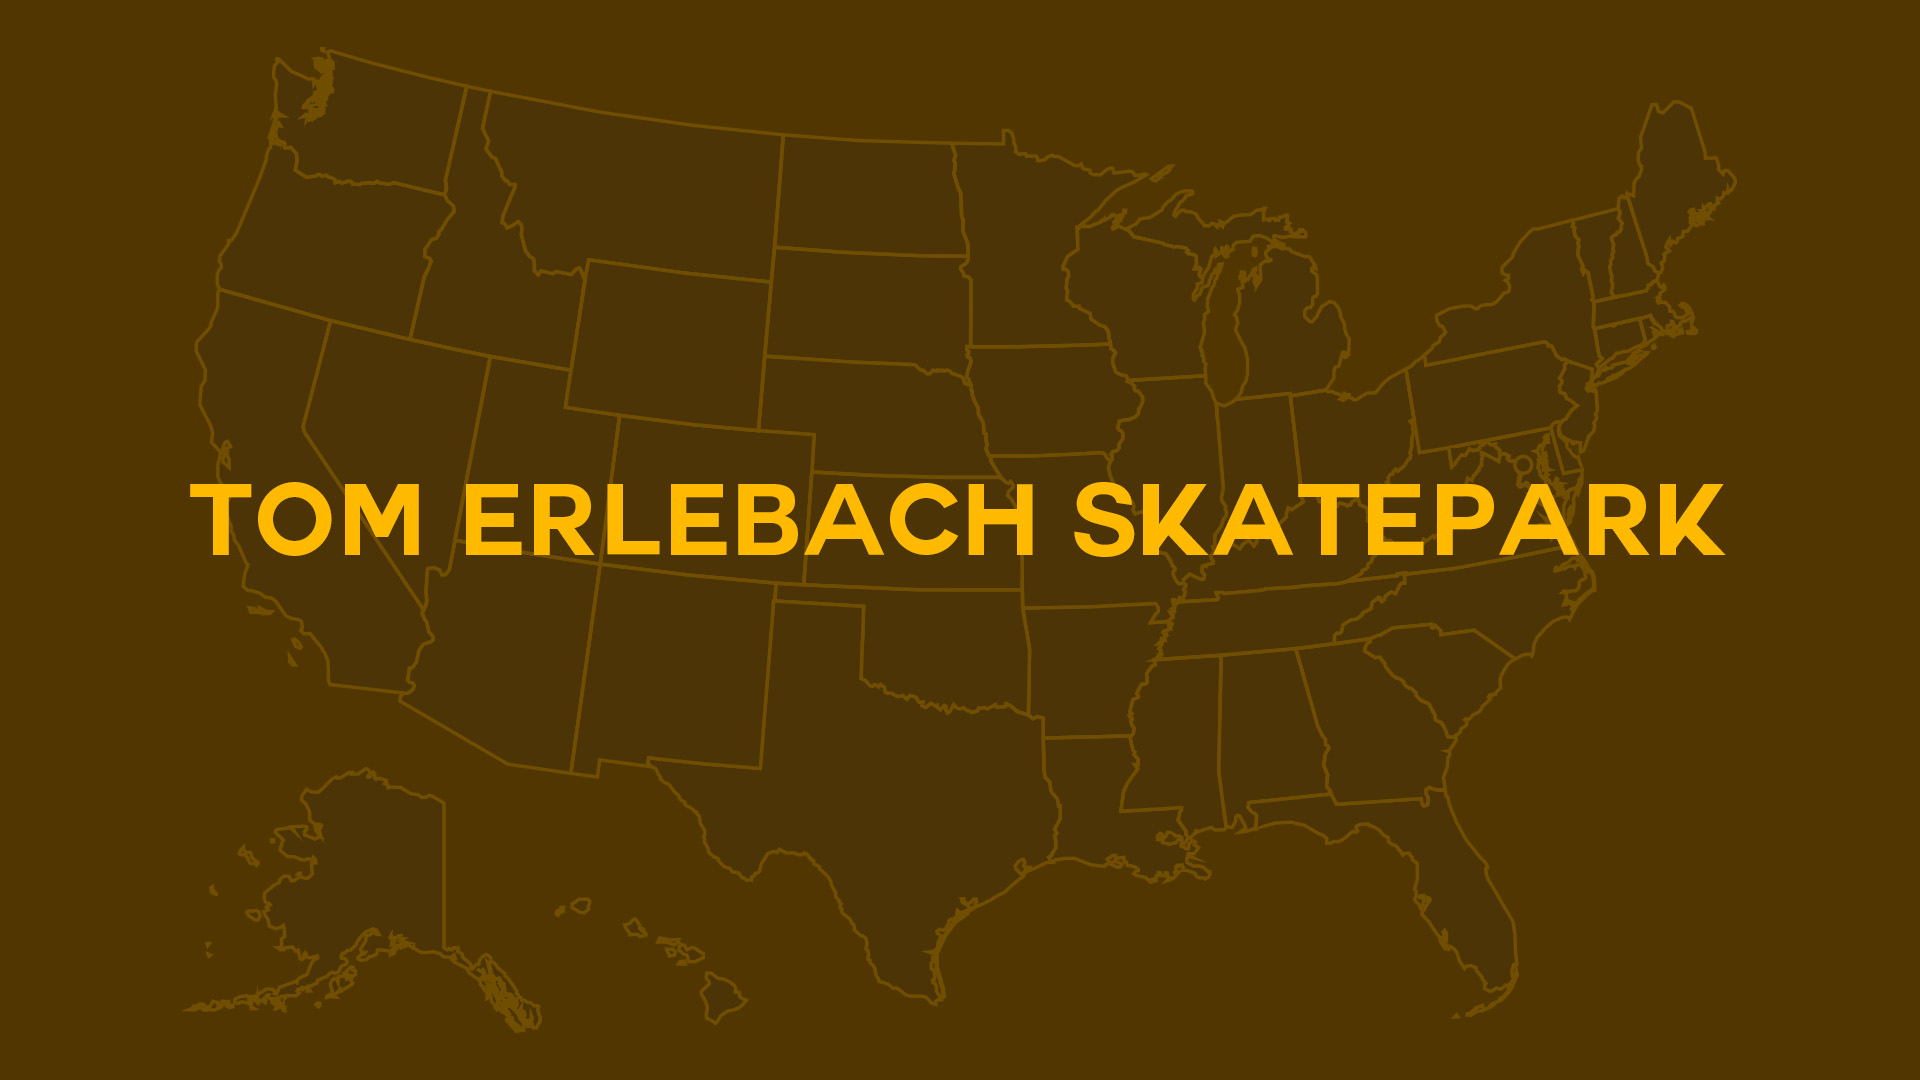 Title card for Tom Erlebach Skatepark